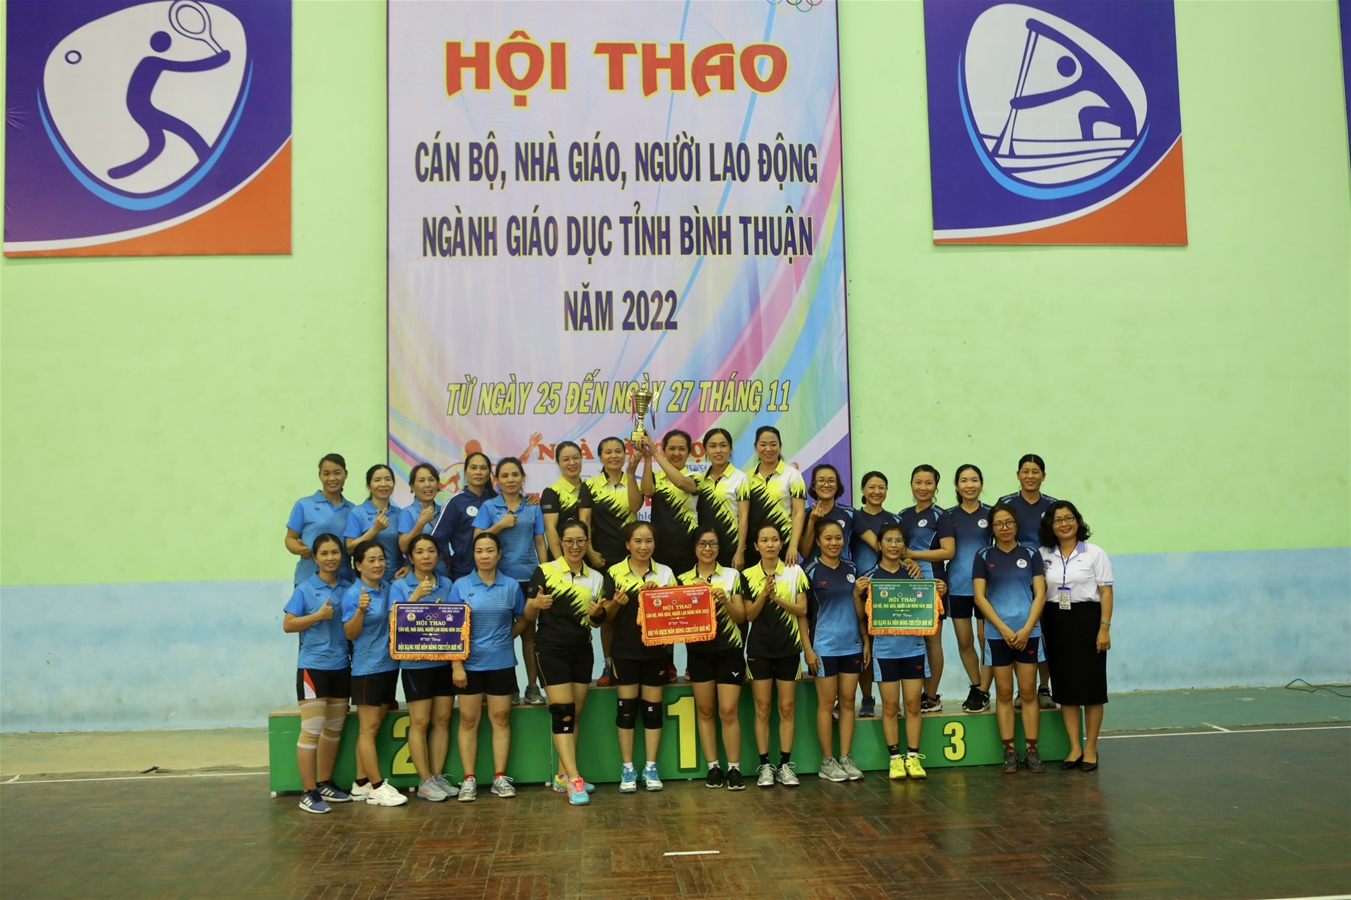 Description: D:\sogiaoduc\ANH CHUP\HINH HOI THAO 2022\VIET TIN BE MAC HOI THAO 2022\3.Các đội nhận giải môn bóng chuyền hơi nữ.jpg